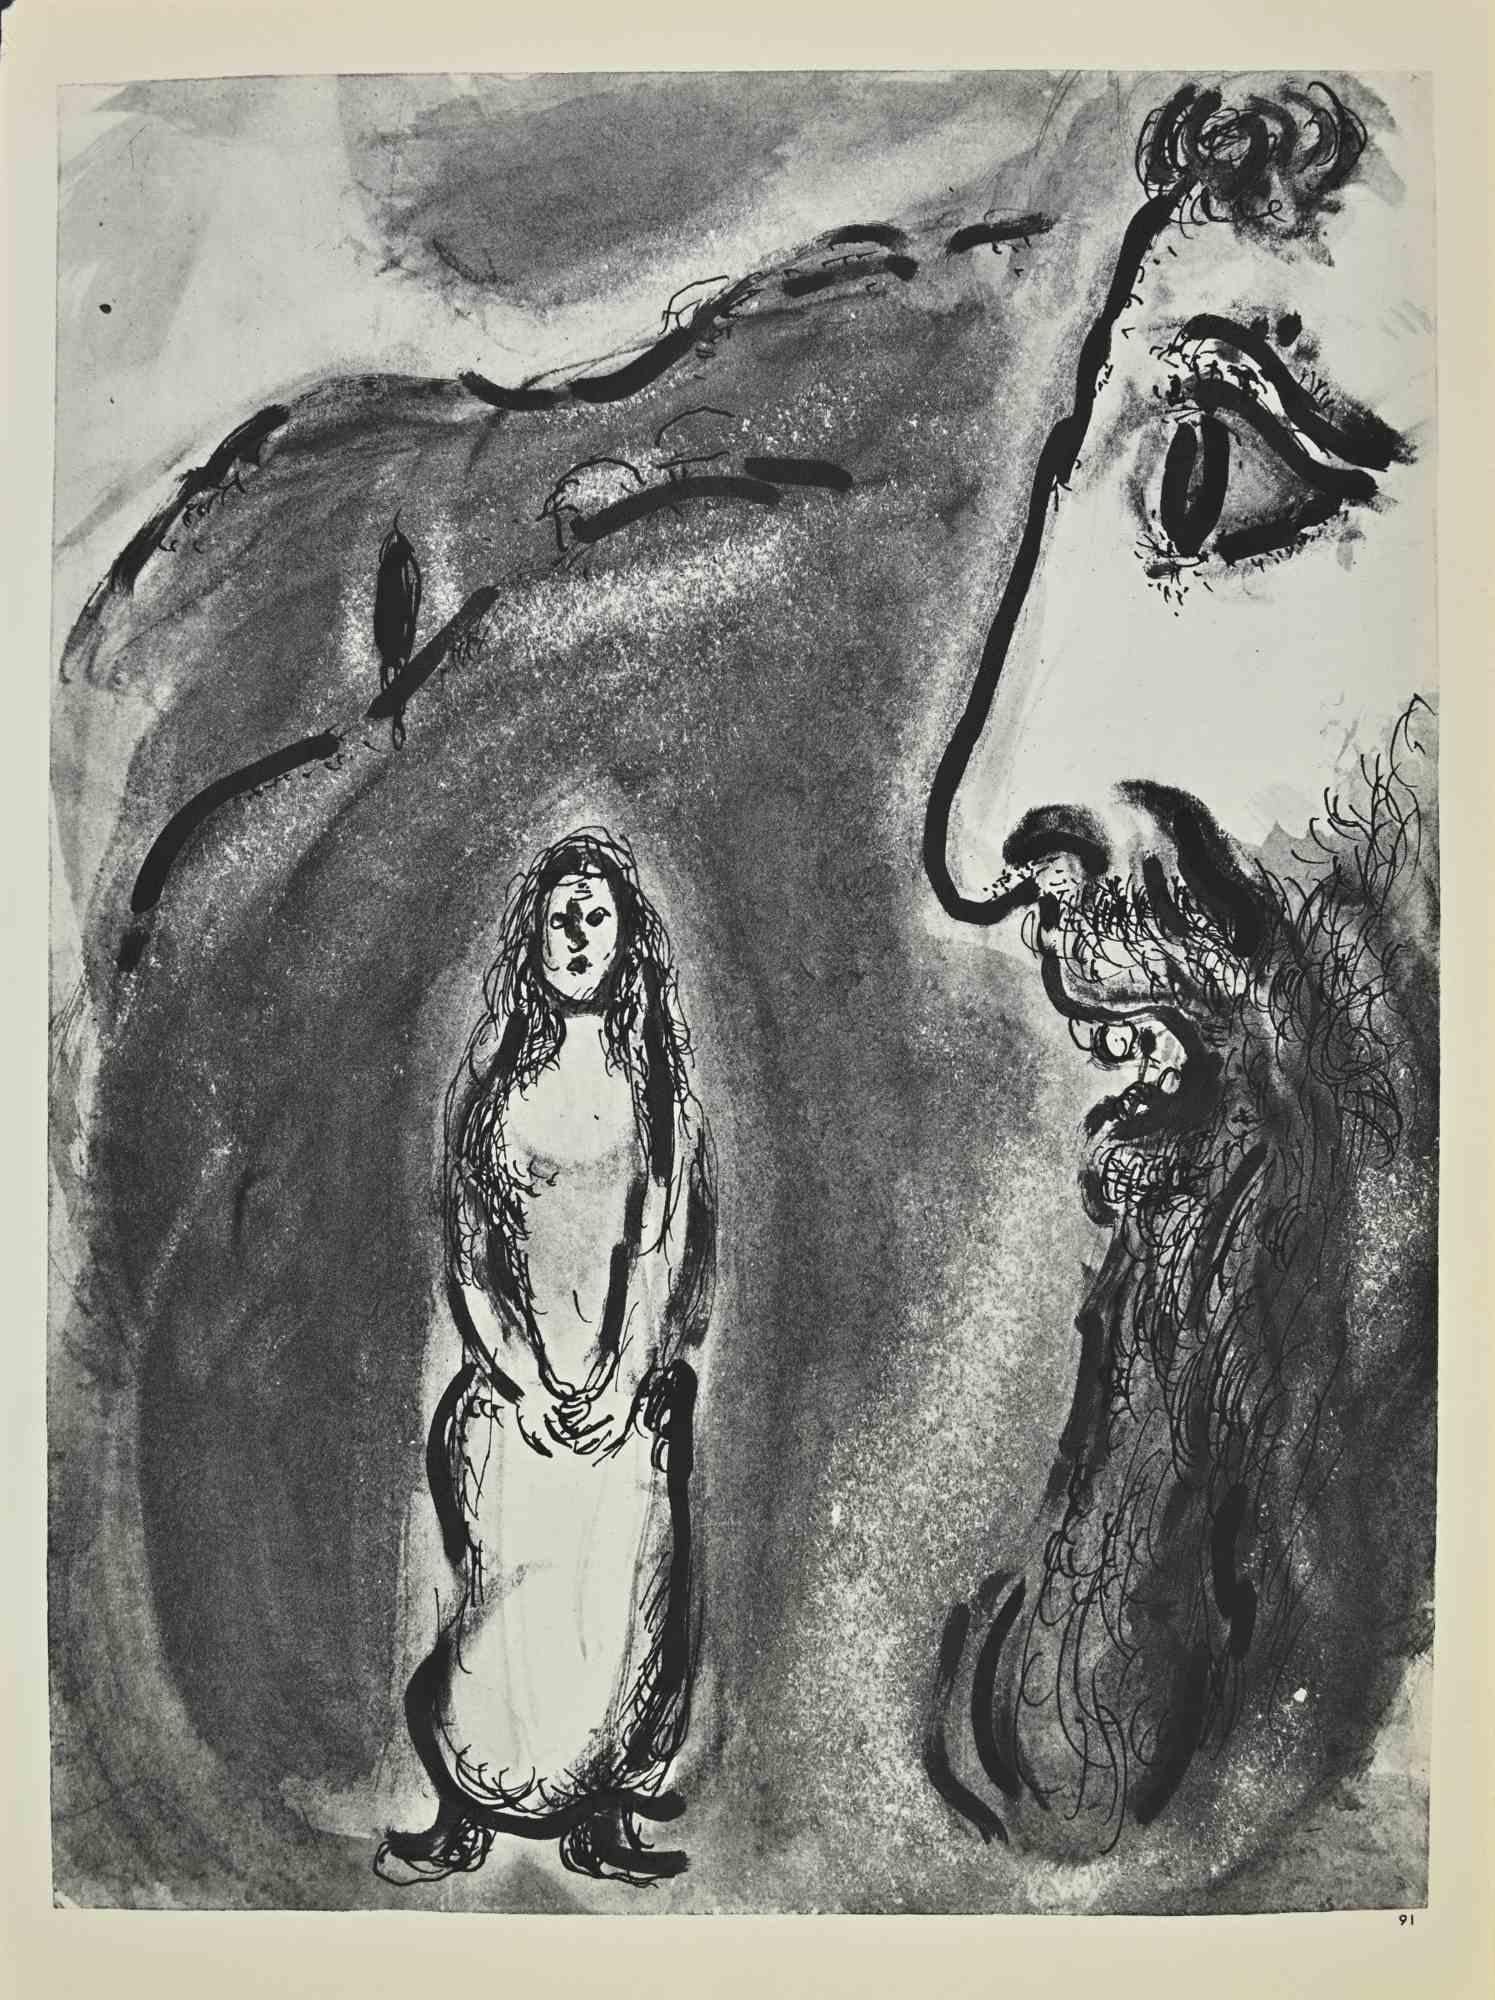 Michée parle à sa fille est une œuvre d'art réalisée par March Chagall, années 1960. 

Lithographie sur papier brun, sans signature.

Lithographie sur les deux feuilles.

Édition de 6500 lithographies non signées. Imprimé par Mourlot et publié par